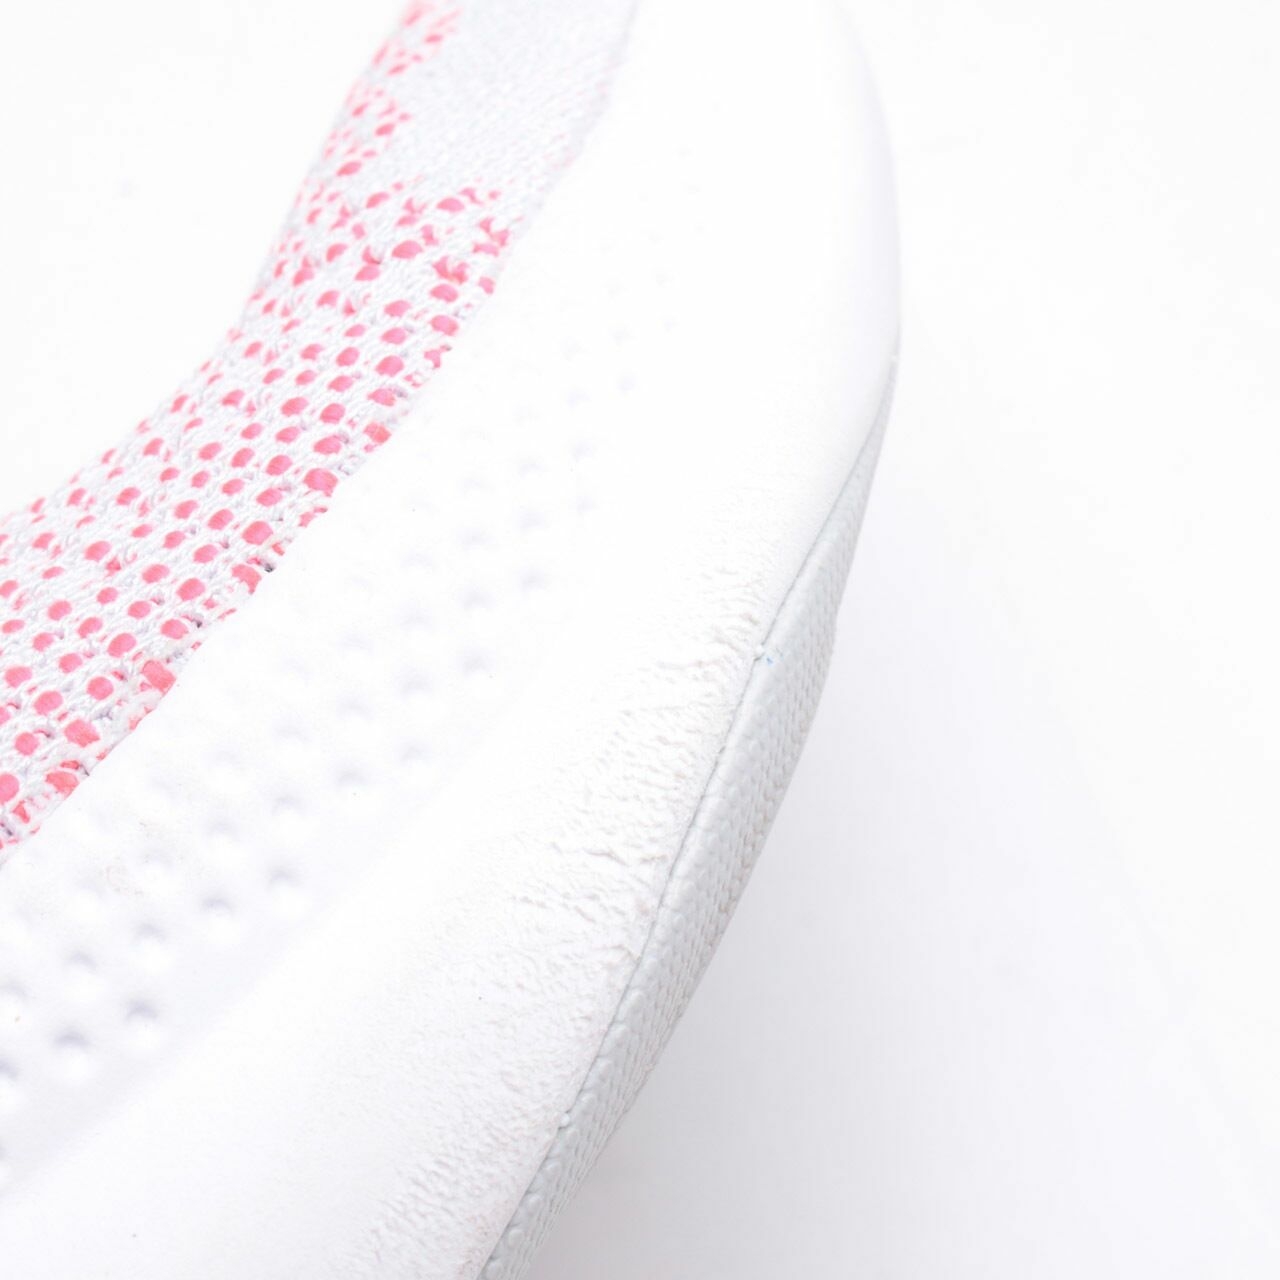 Nike White/Multi Joyride Run Flyknit Sneakers